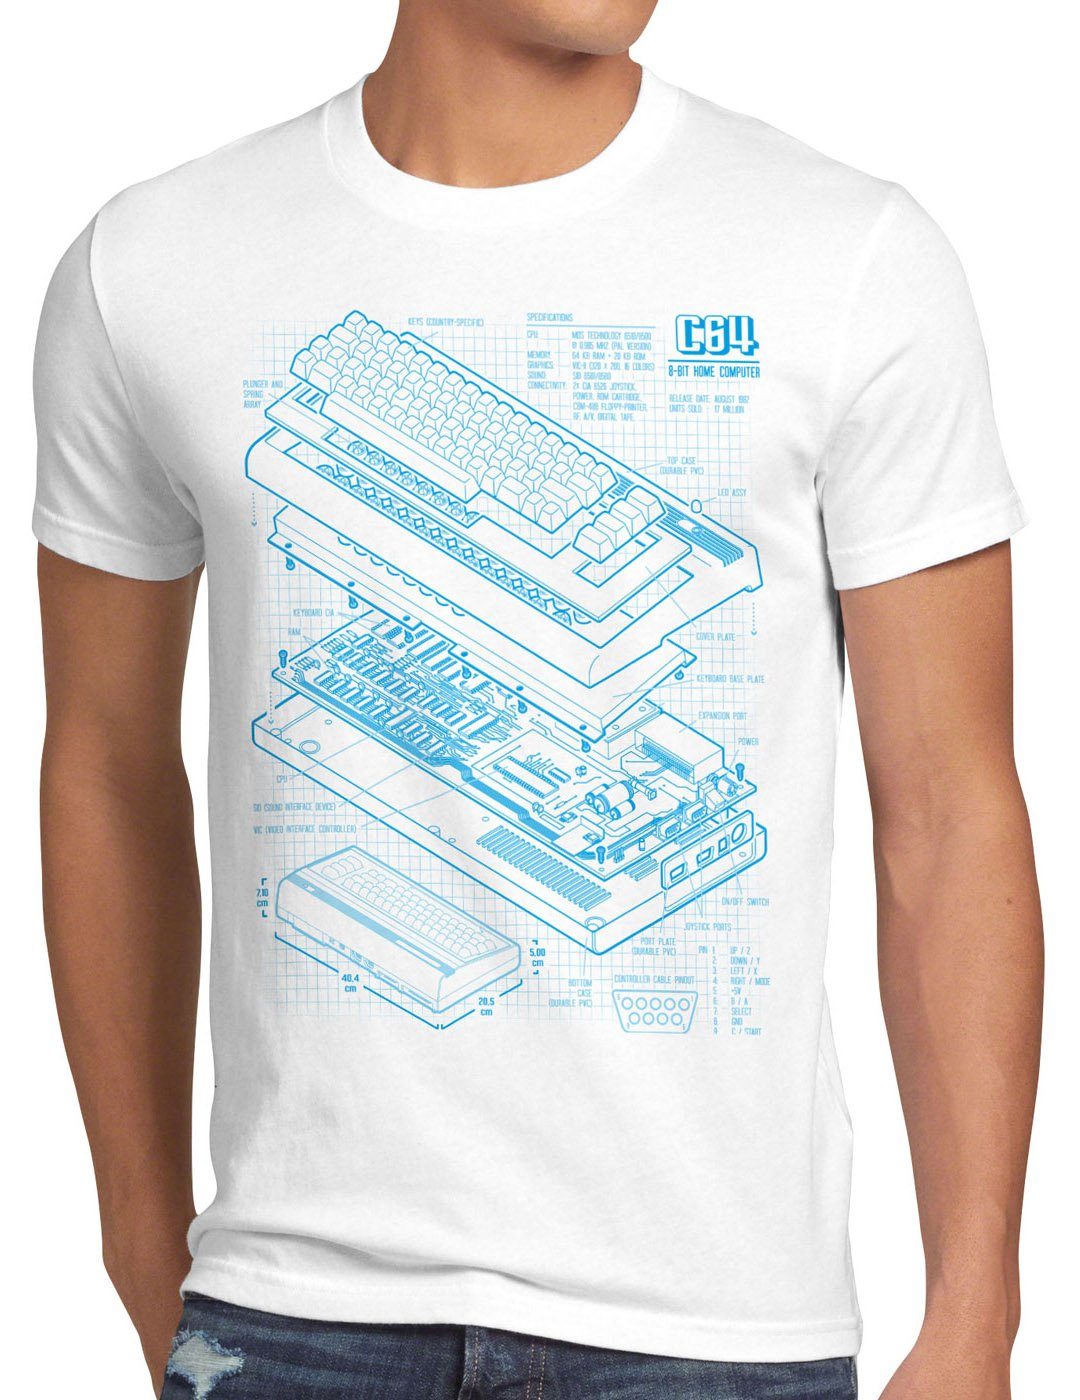 style3 Print-Shirt Herren T-Shirt C64 Heimcomputer Blaupause classic gamer weiß